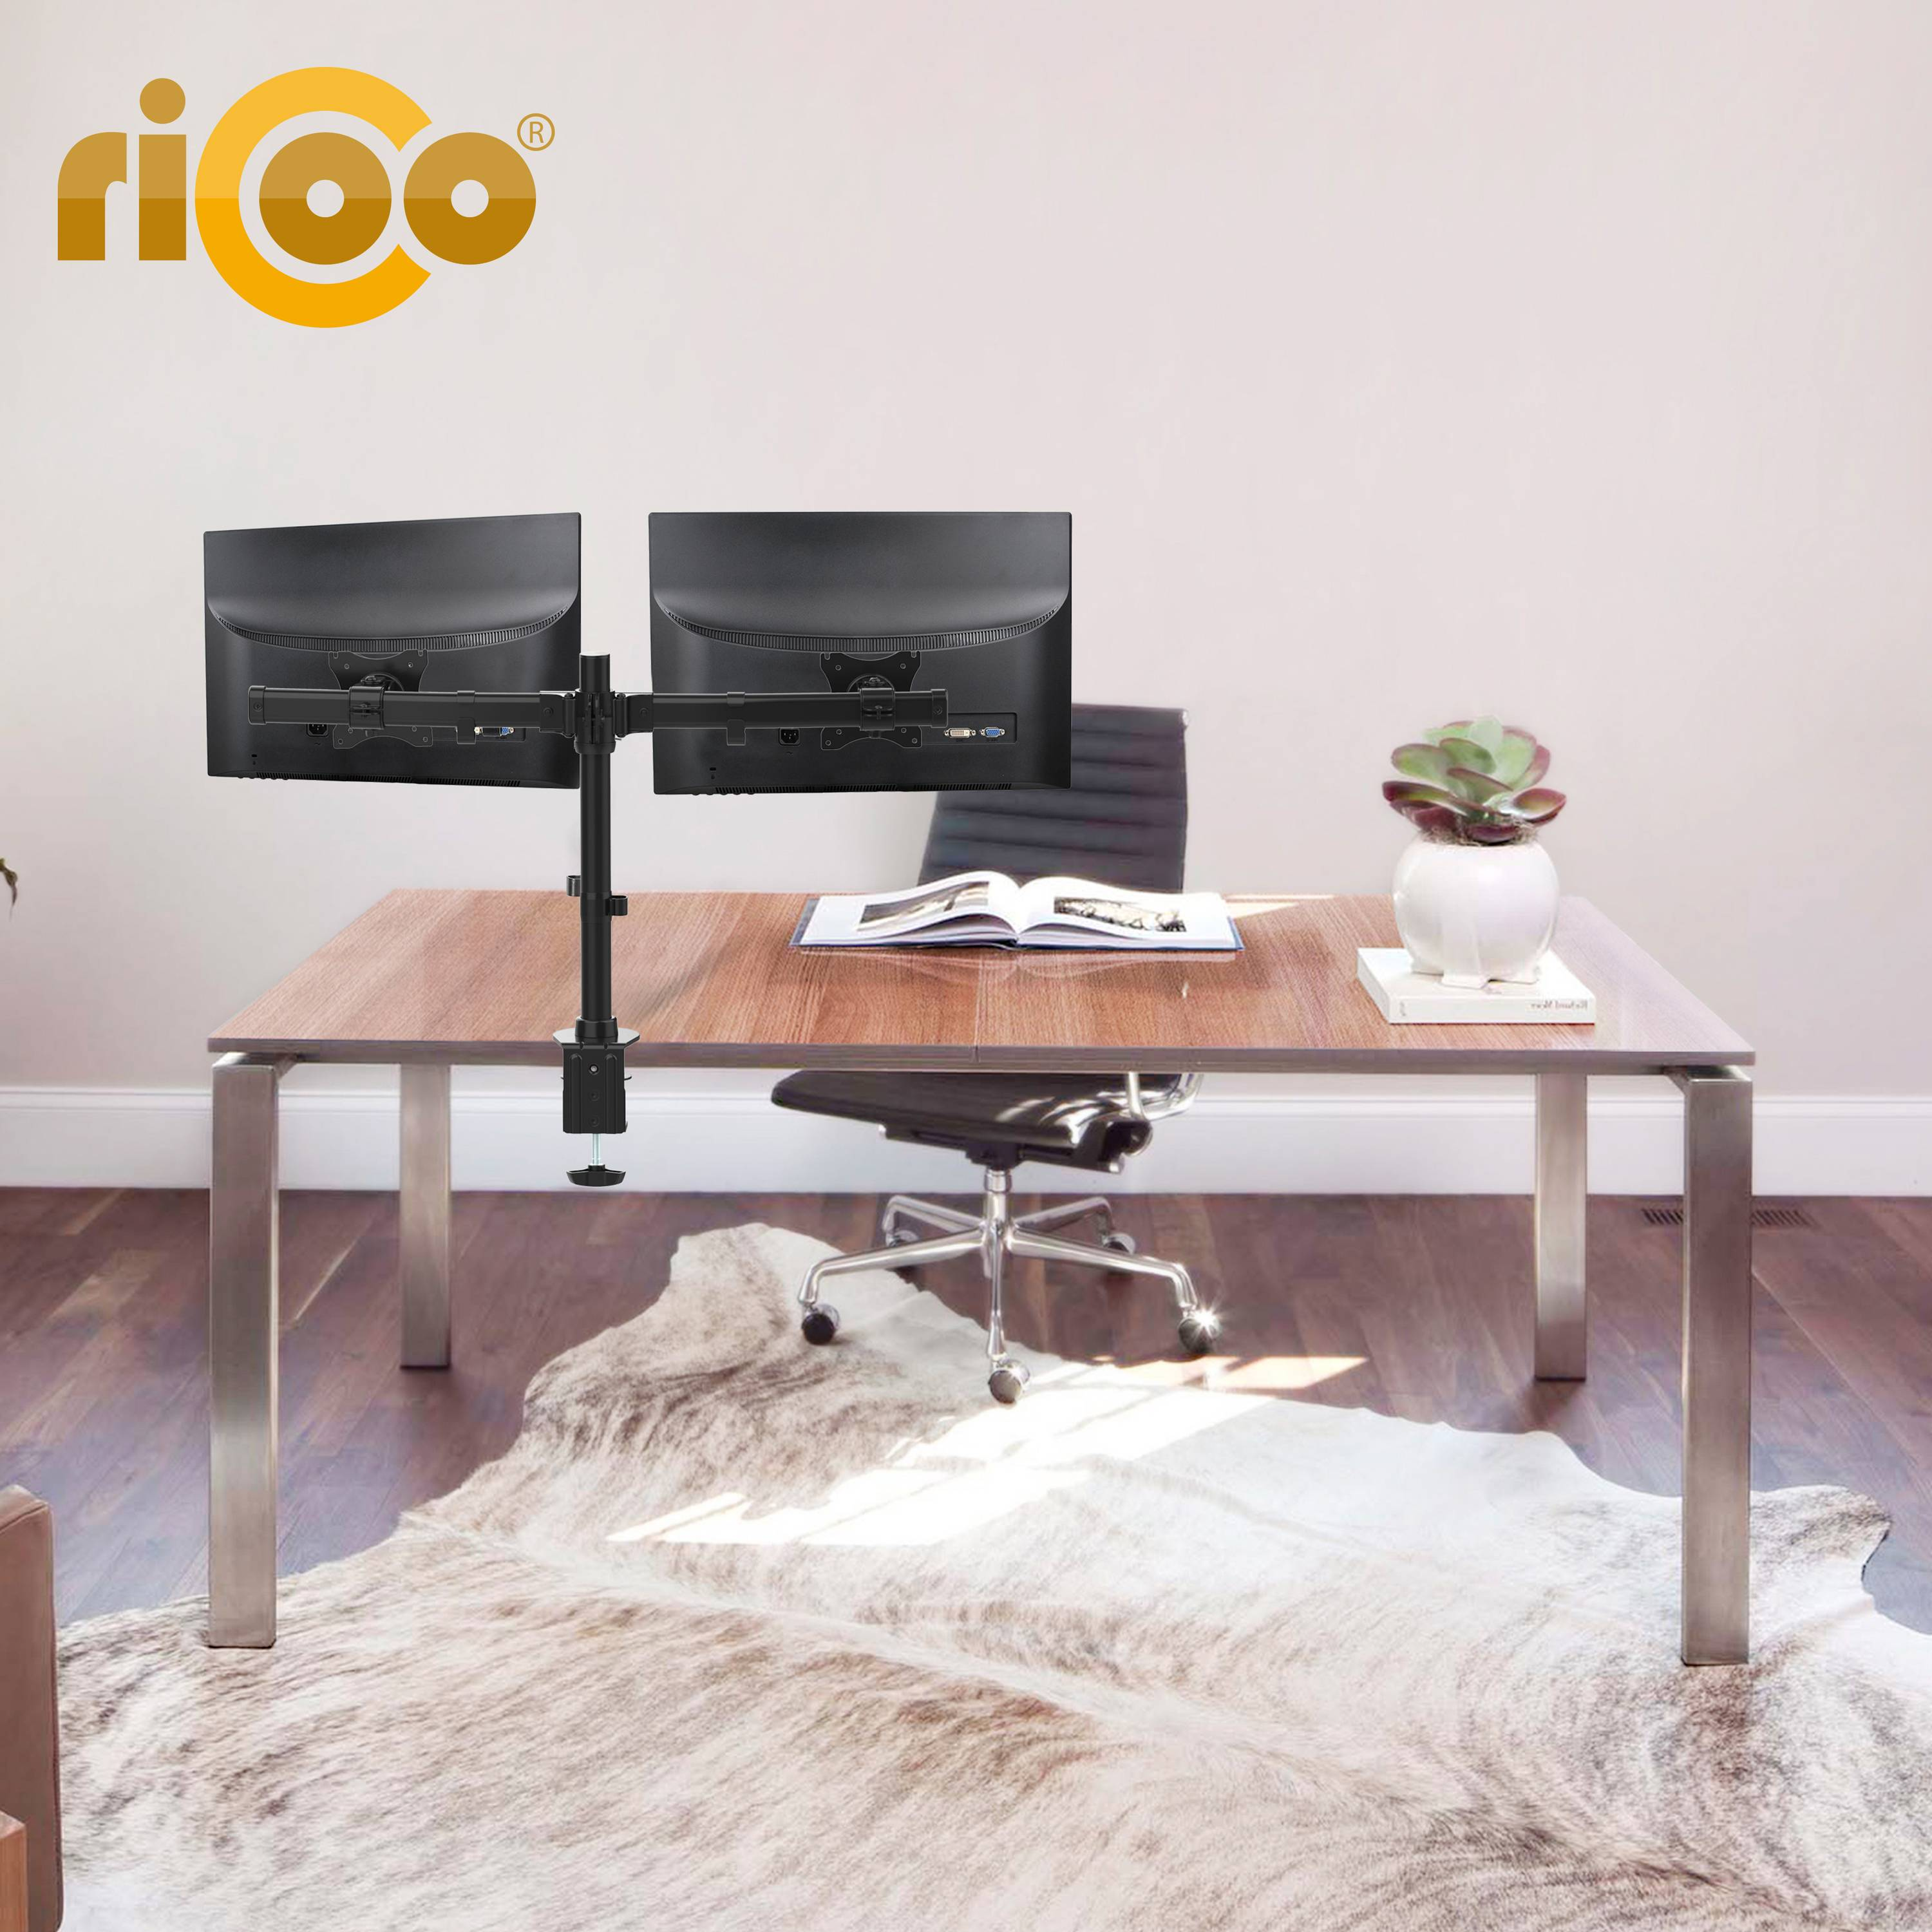 RICOO TS7811 Tischhalterung, Monitor schwarz